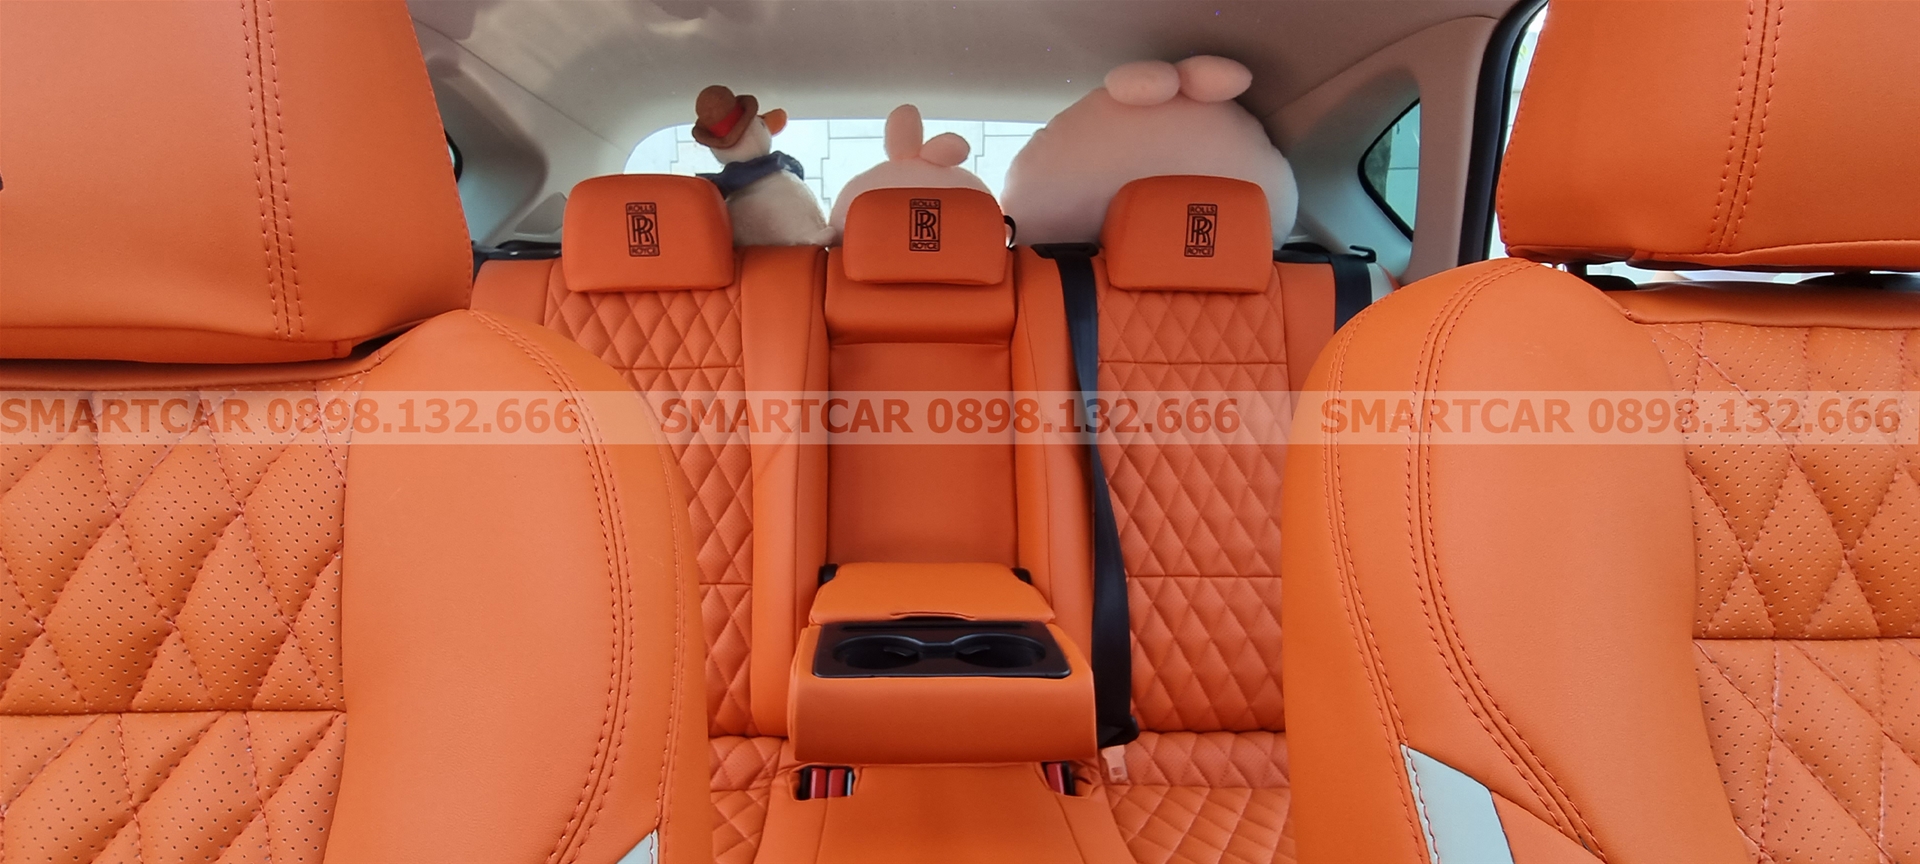 Bọc ghế da Mazda CX5 màu cam Hermes - Hình 4